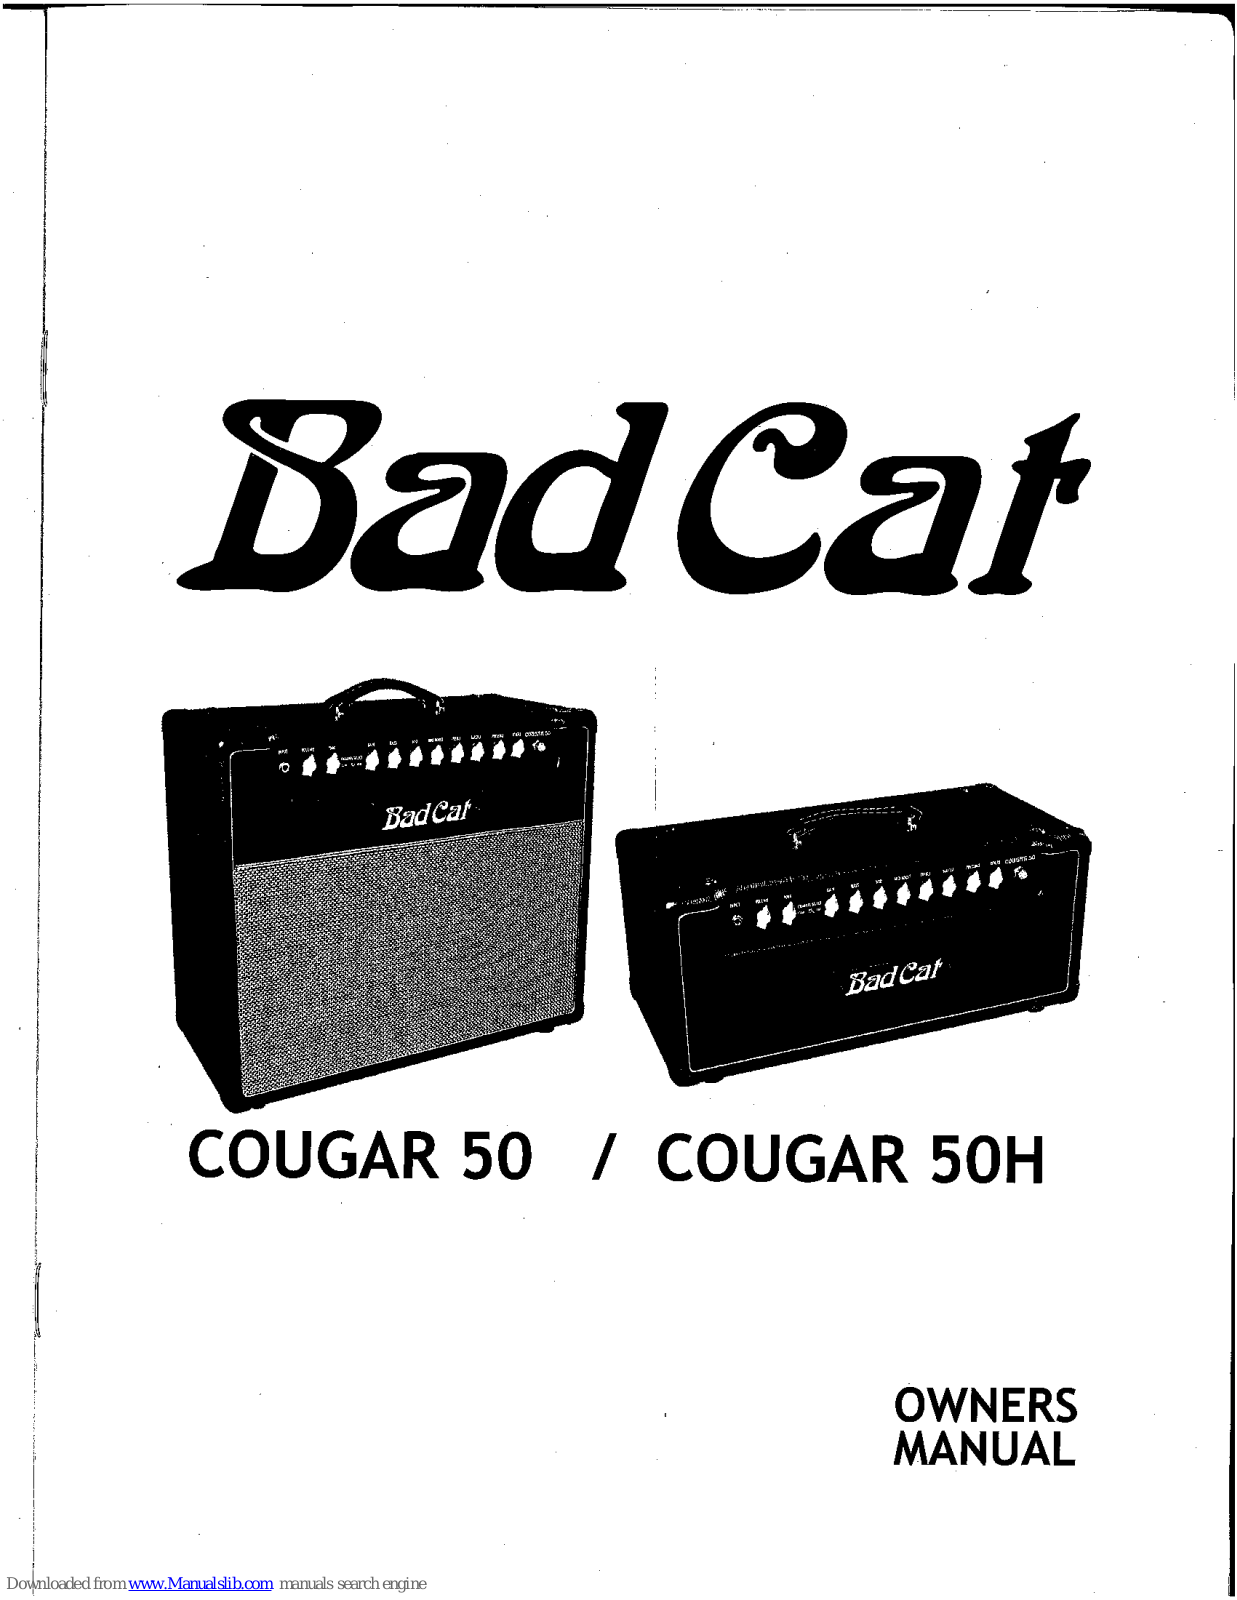 Bad Cat Cougar 50, Cougar 50H Owner's Manual